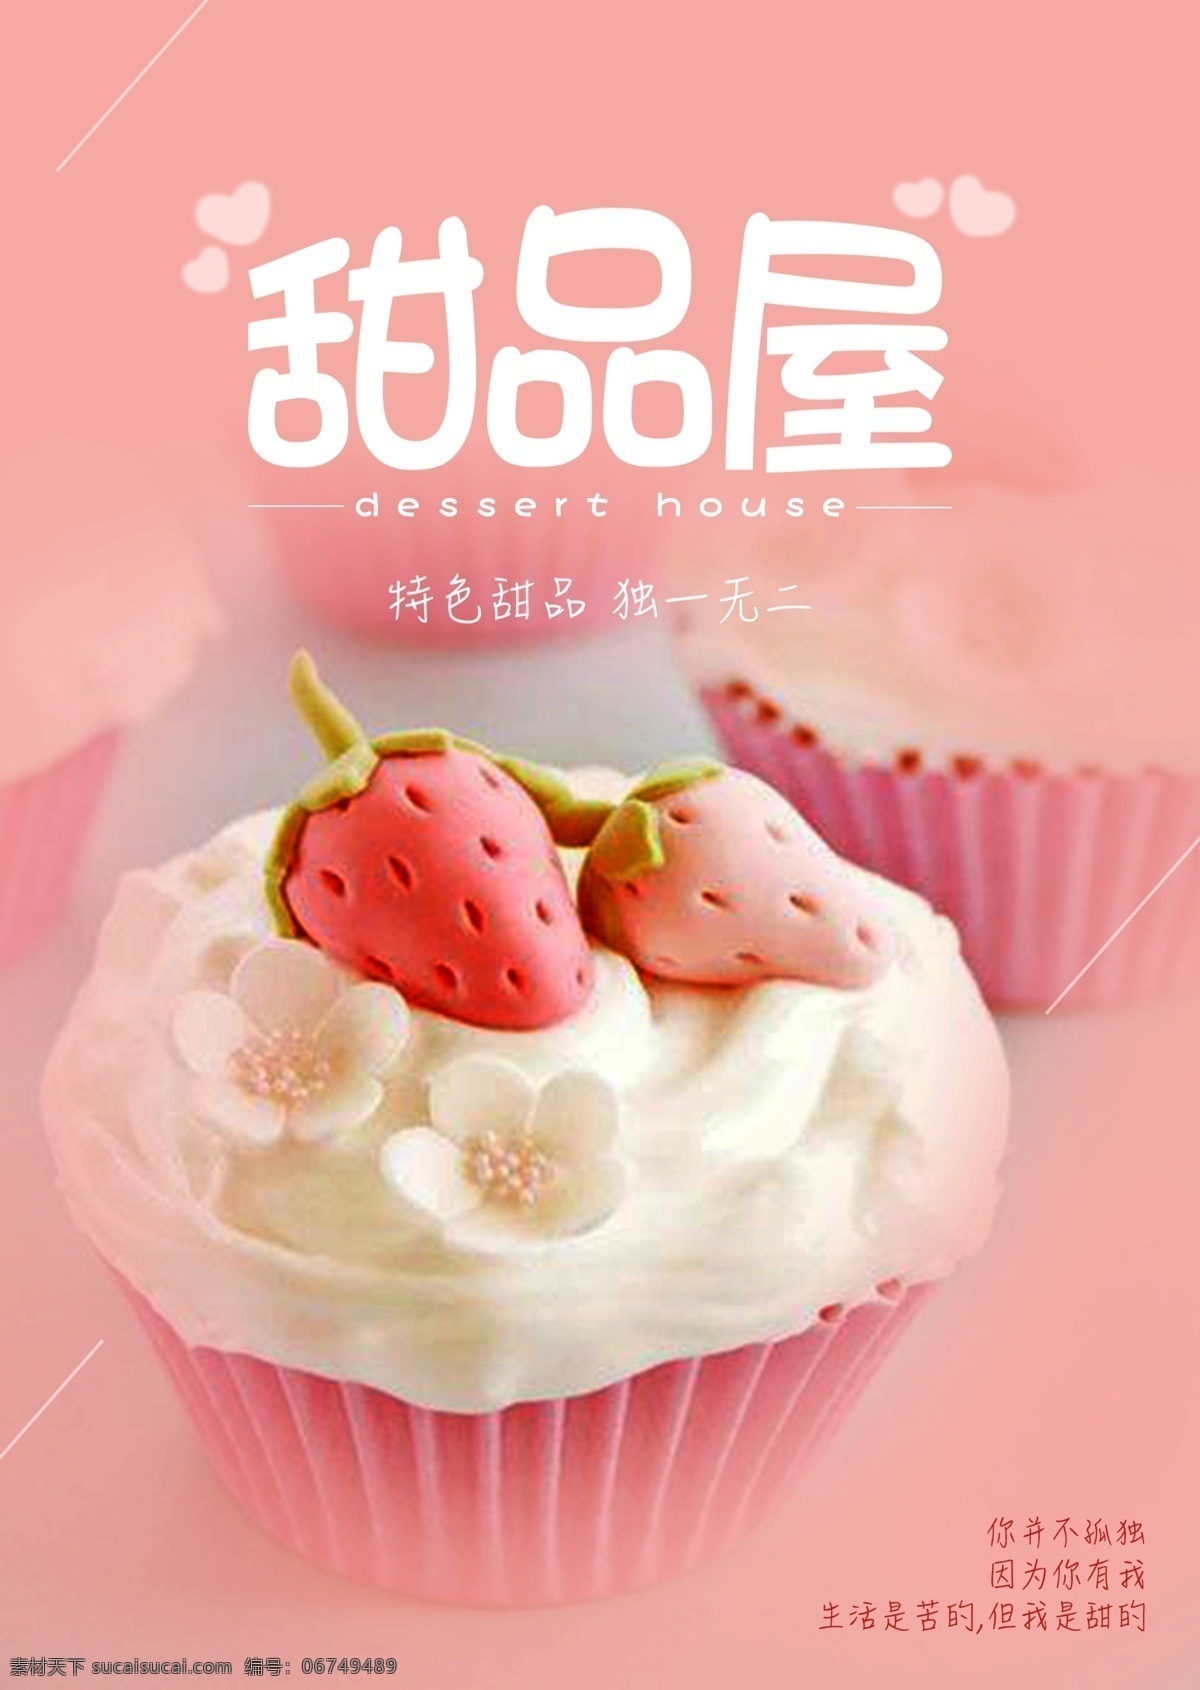 甜品屋 甜品 蛋糕 草莓 粉色 少女 美食 奶油 爱心 可爱 美味 海报 宣传海报 甜品店 广告 饮食 小清新 小白创作